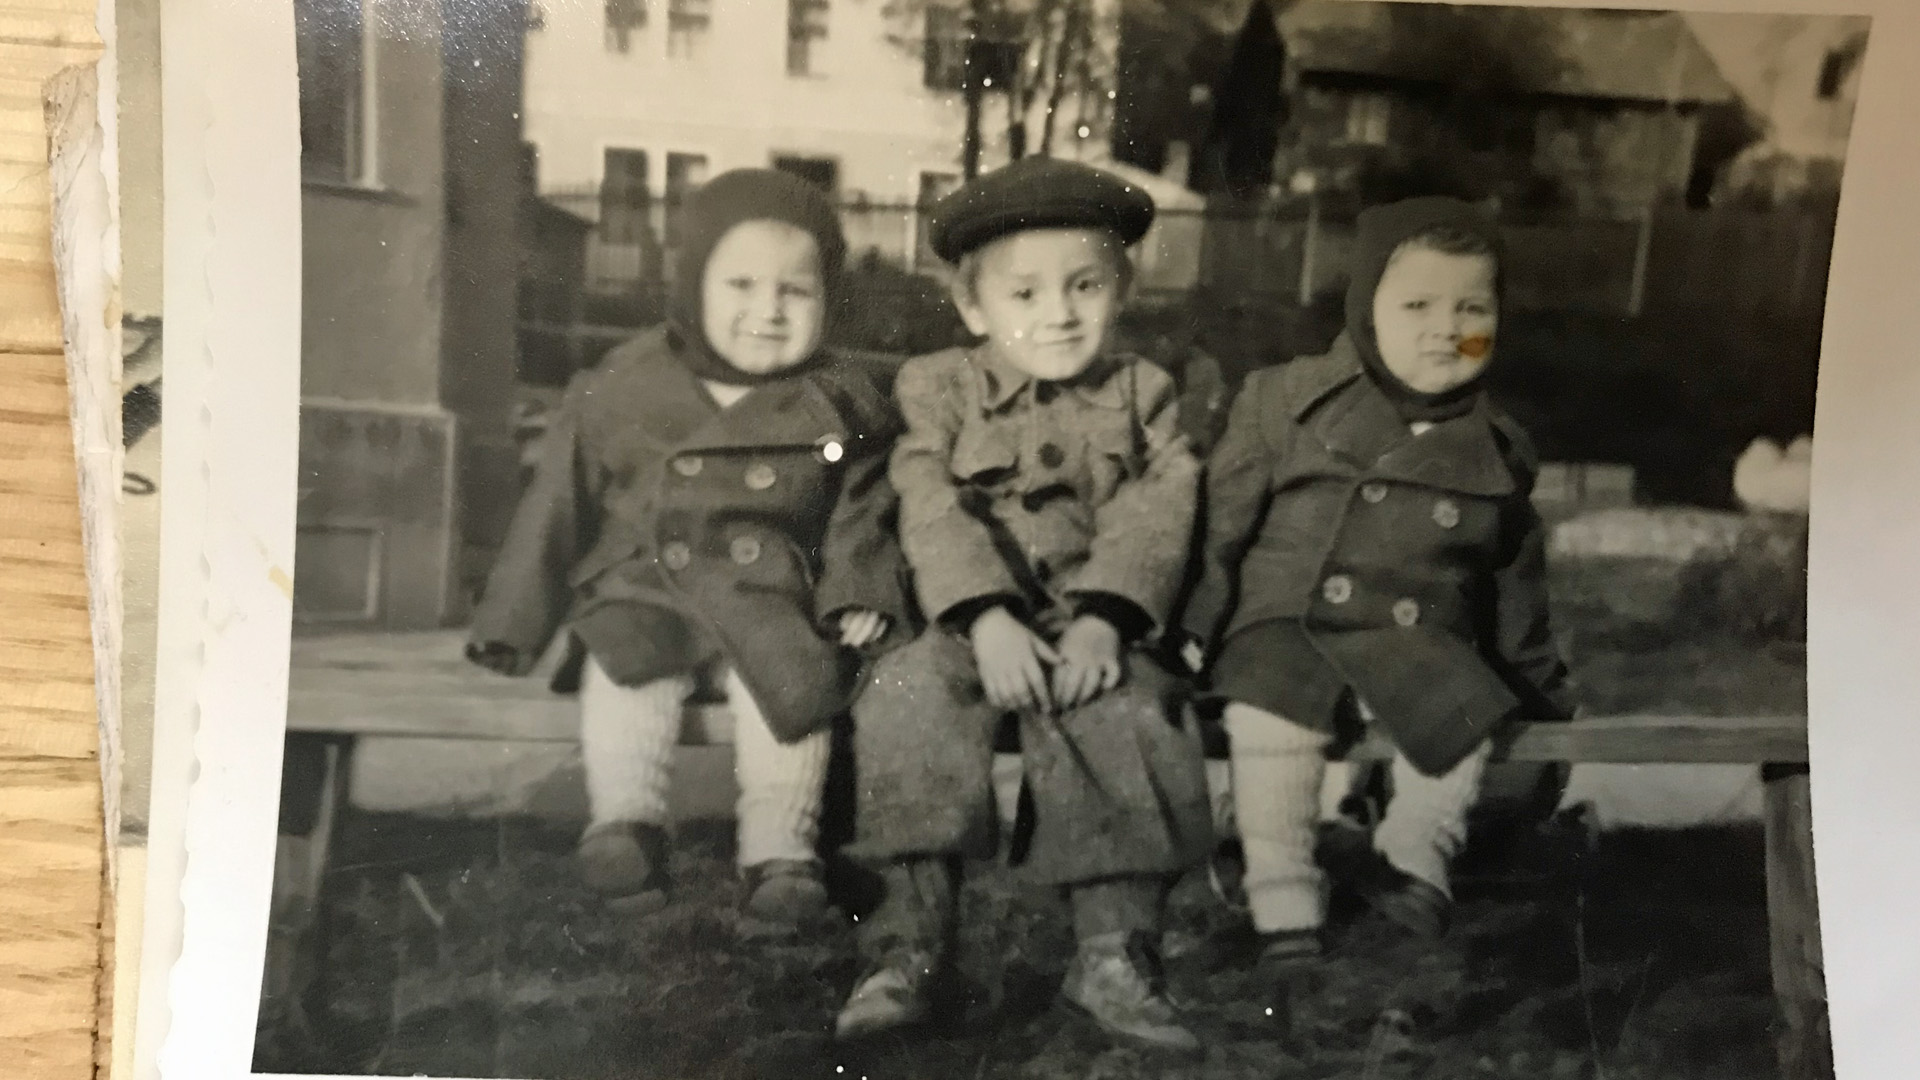 Yossi und sein Zwillingsbruder zusammen mit ihrem großen Bruder auf einer Bank im DP-Camp Eichstätt Ende der 1940er Jahre